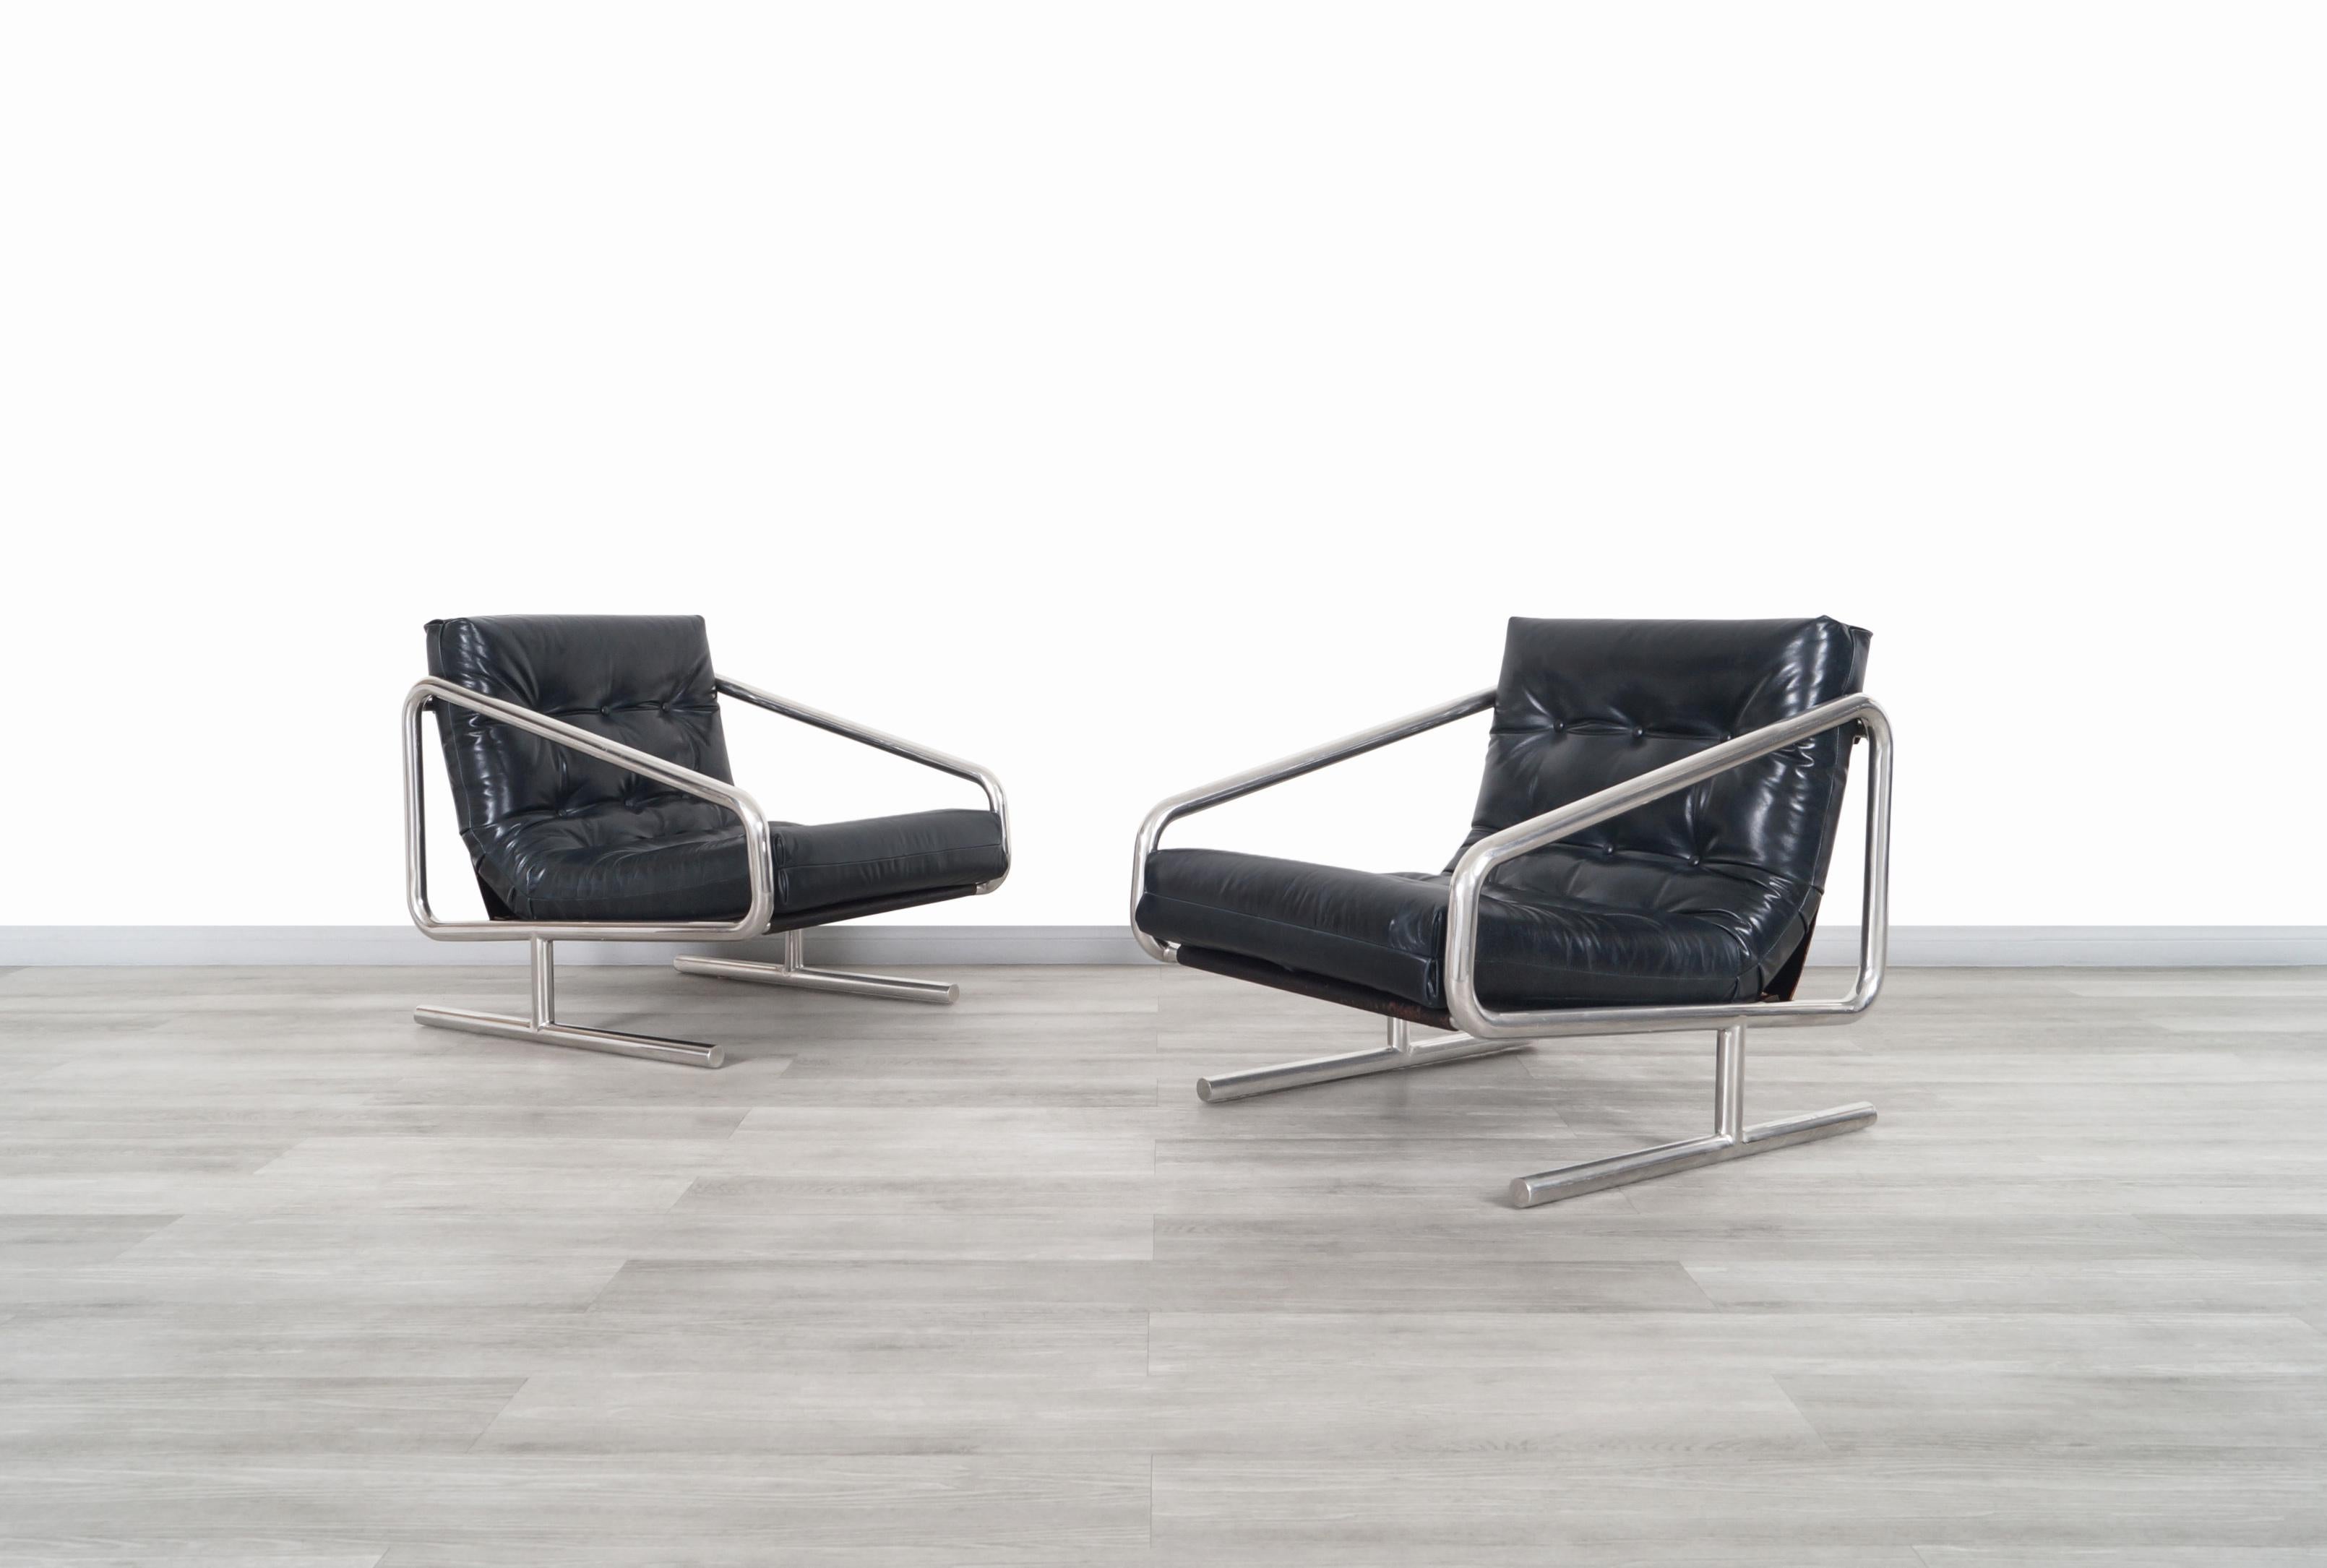 Fabuleux fauteuils de salon vintage en cuir et aluminium conçus et fabriqués aux États-Unis, vers les années 1970. Comprend de confortables coussins en cuir bleu nuit ; chaque coussin est doté d'élégants boutons disposés symétriquement. Nos artisans